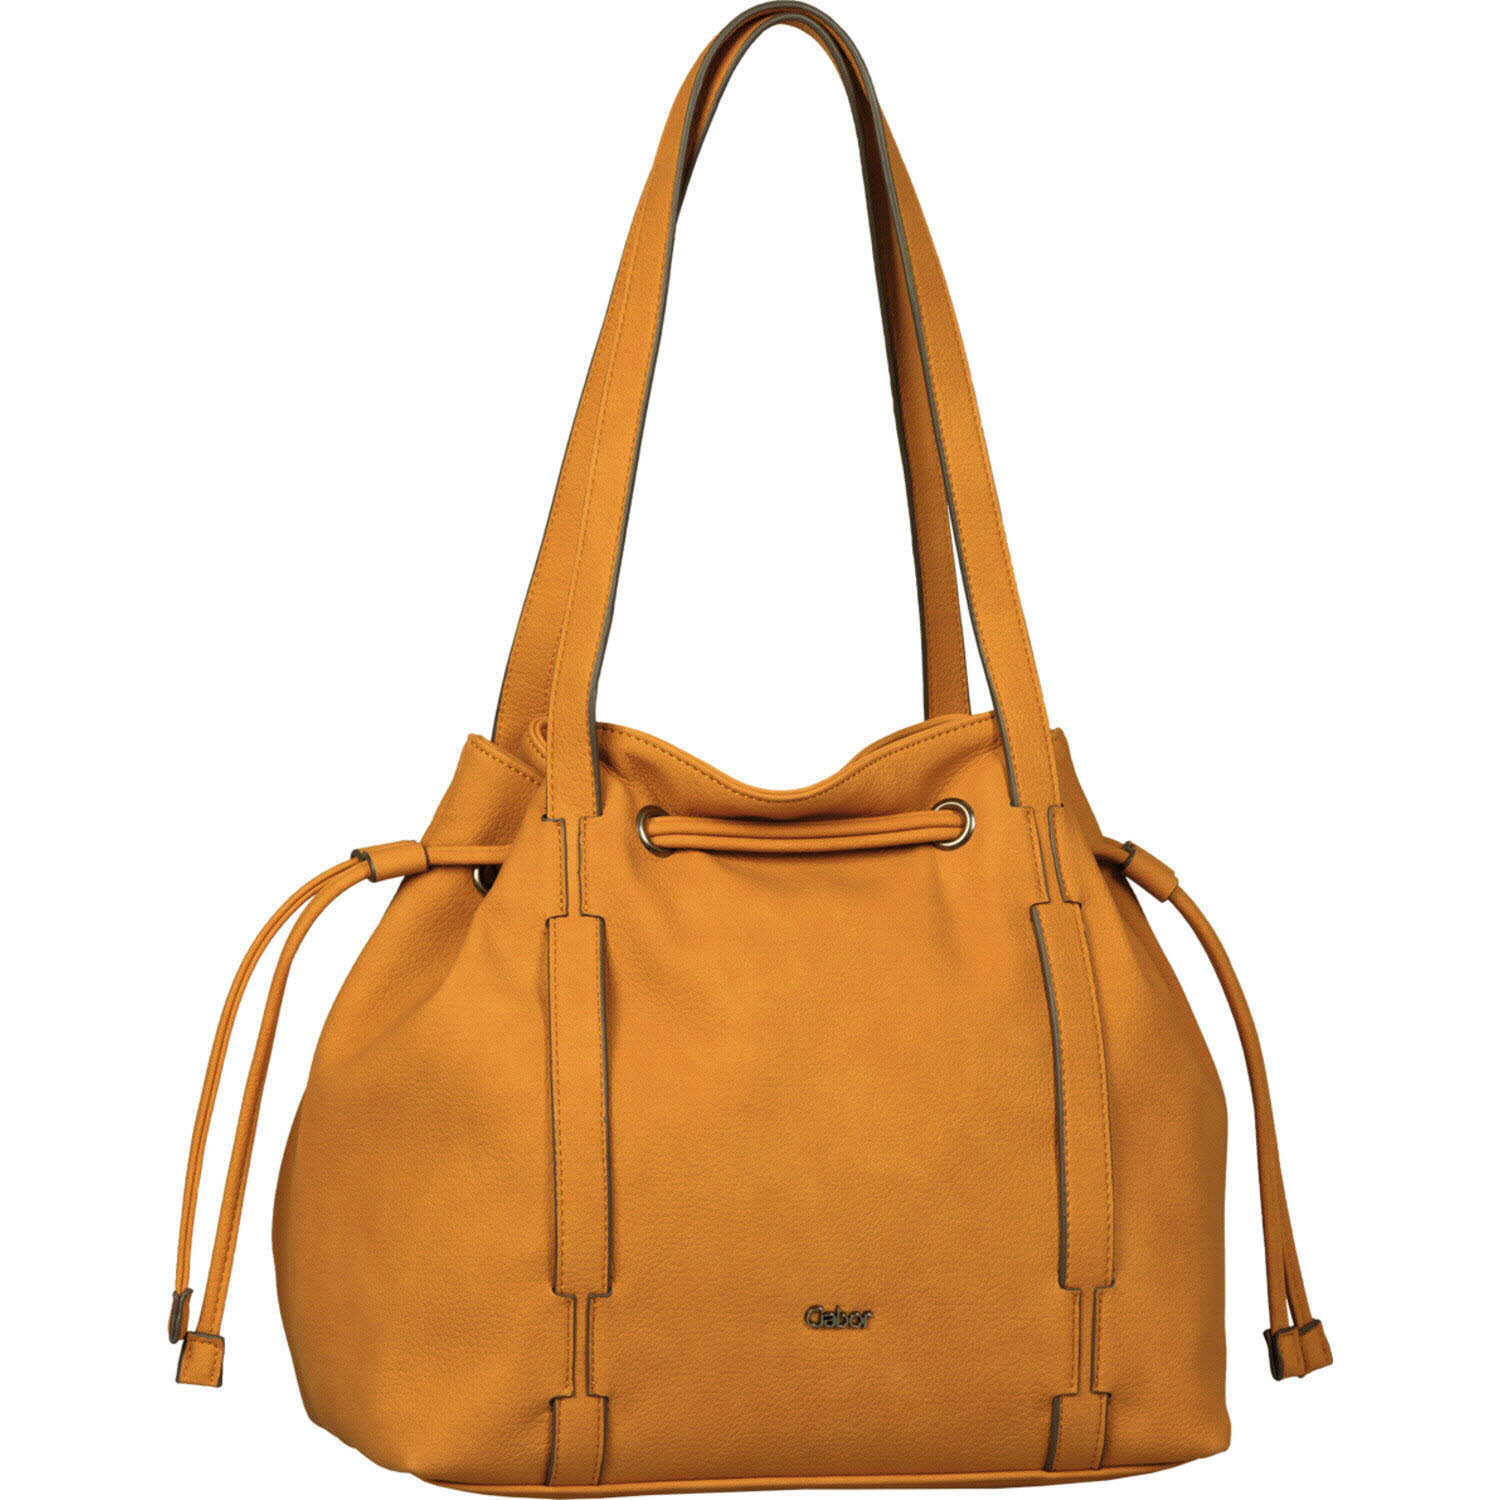 Damen Shopper von Gabor Bags auch in Gelb erhältlich